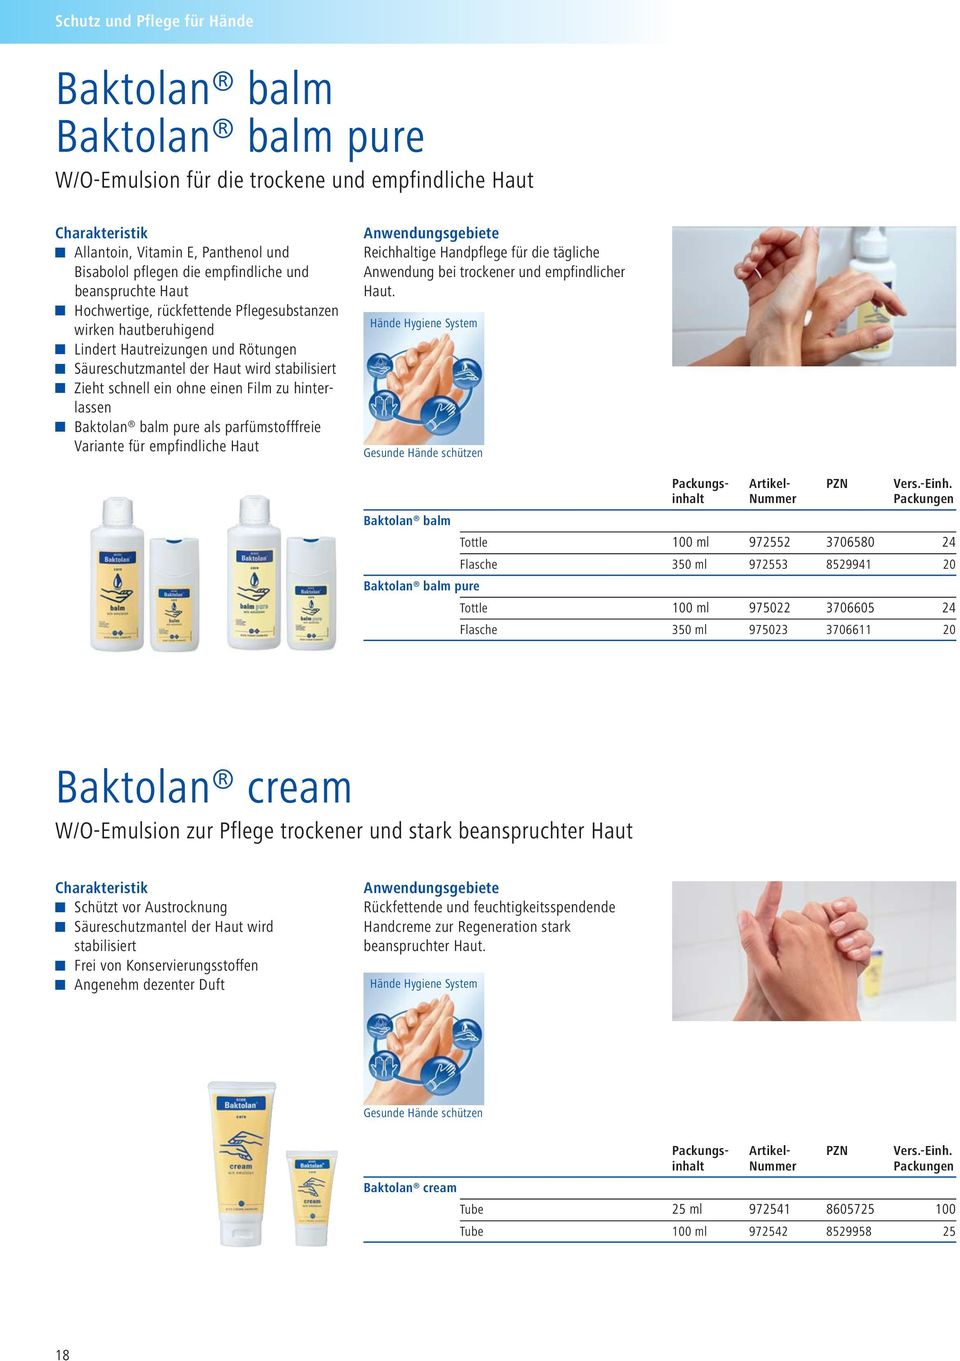 hinterlassen Baktolan balm pure als parfümstofffreie Variante für empfindliche Haut Reichhaltige Handpflege für die tägliche Anwendung bei trockener und empfindlicher Haut.